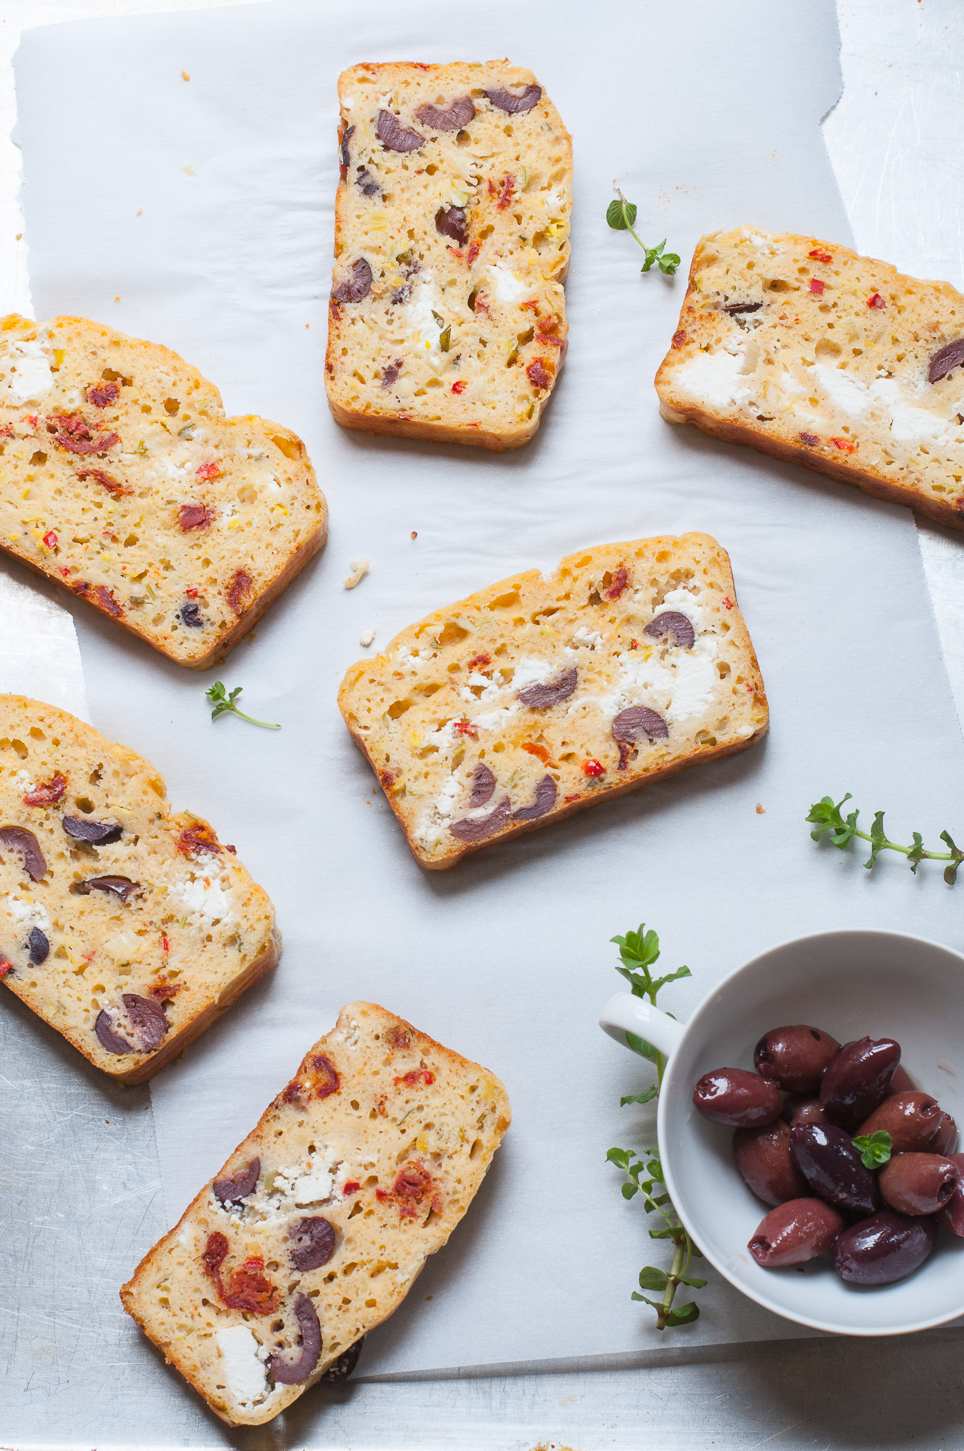 Schnelles mediterranes Brot mit Ziegenfrischkäse und Oliven. Super zum Brunch oder Picknick!